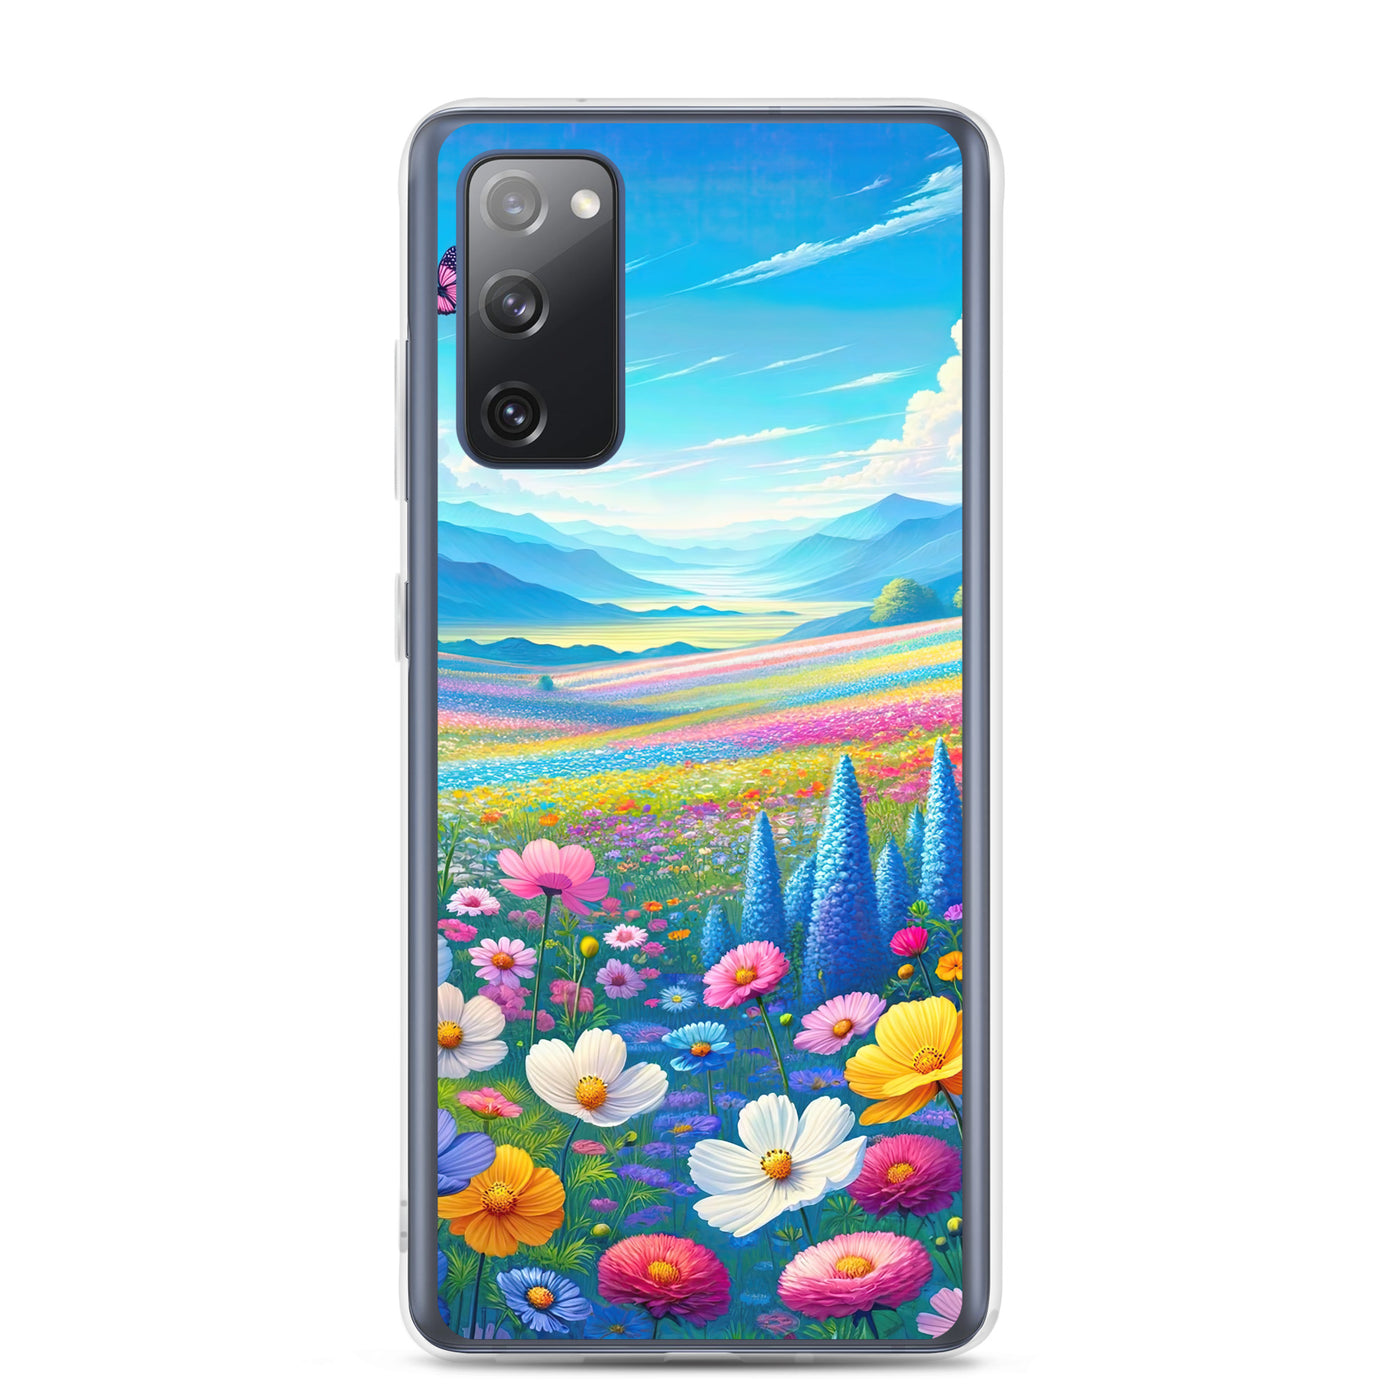 Weitläufiges Blumenfeld unter himmelblauem Himmel, leuchtende Flora - Samsung Schutzhülle (durchsichtig) camping xxx yyy zzz Samsung Galaxy S20 FE